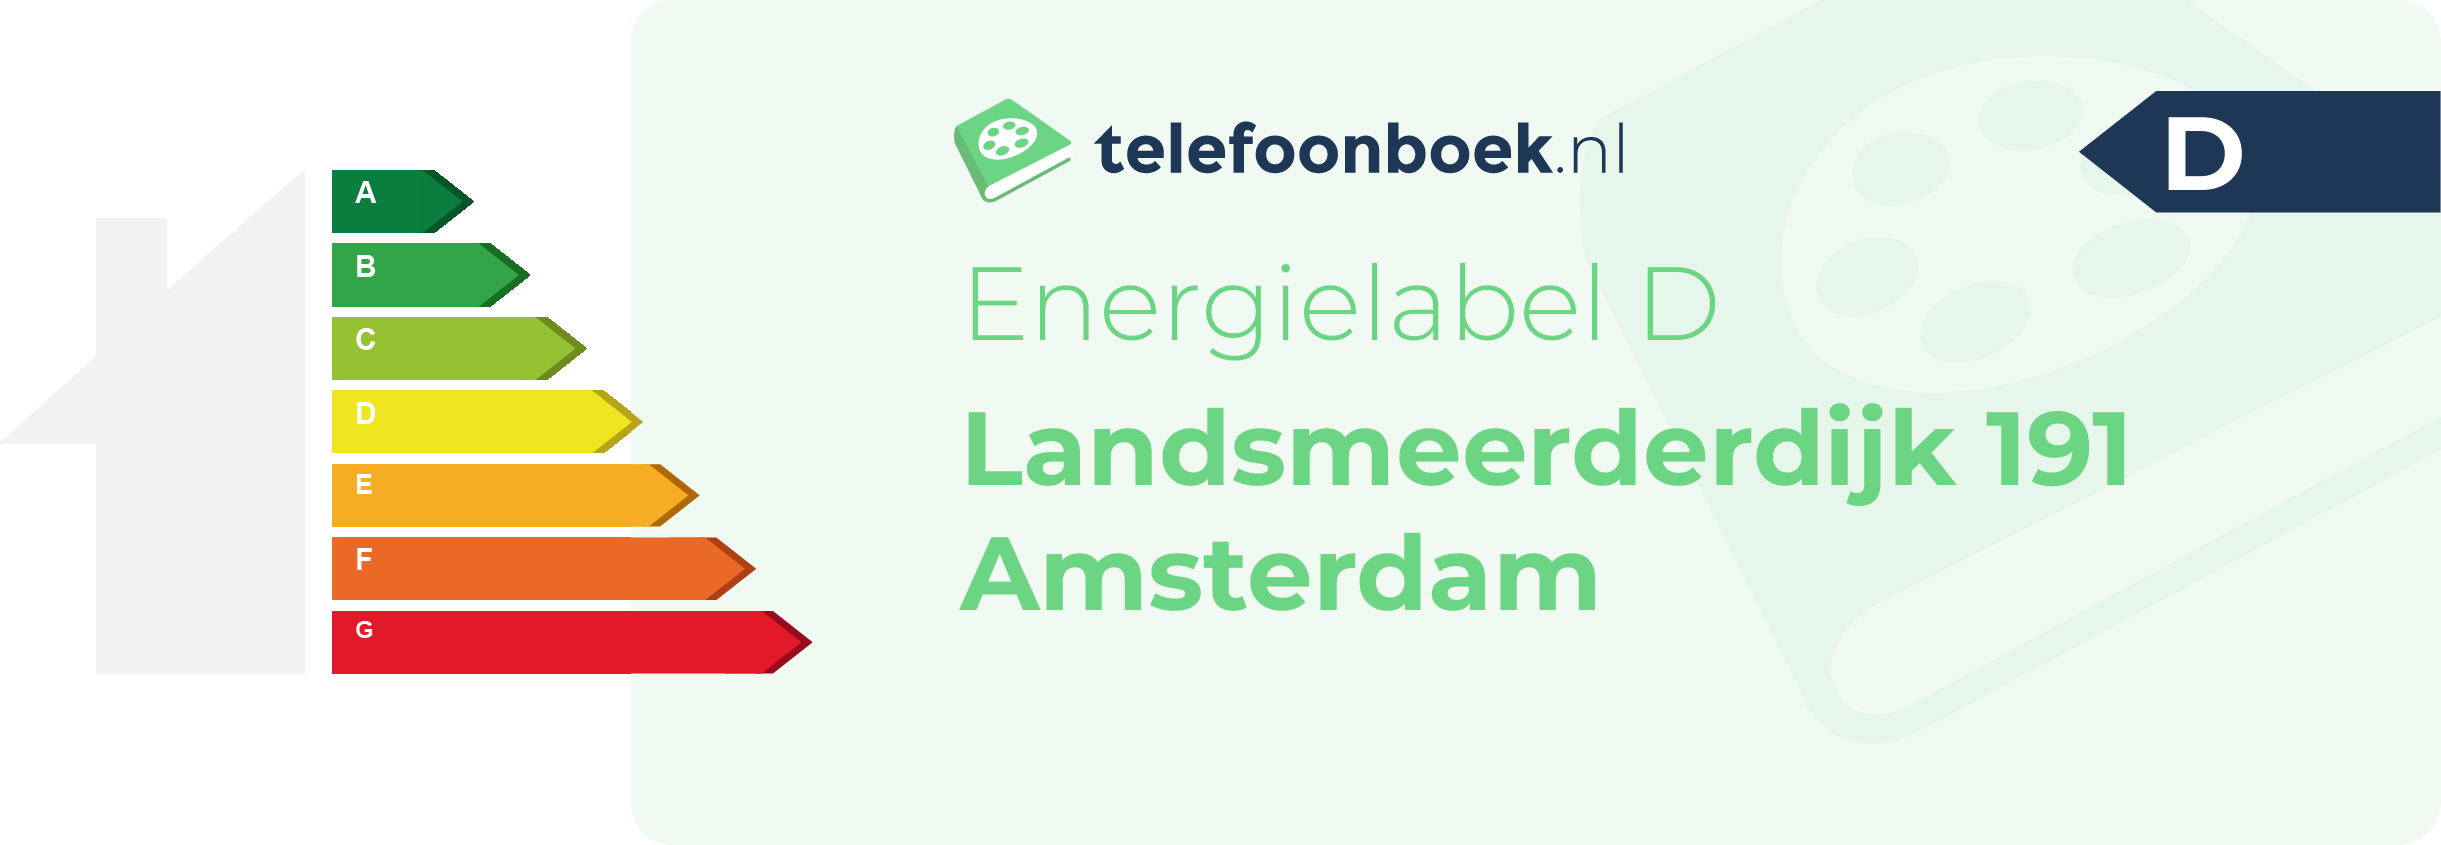 Energielabel Landsmeerderdijk 191 Amsterdam